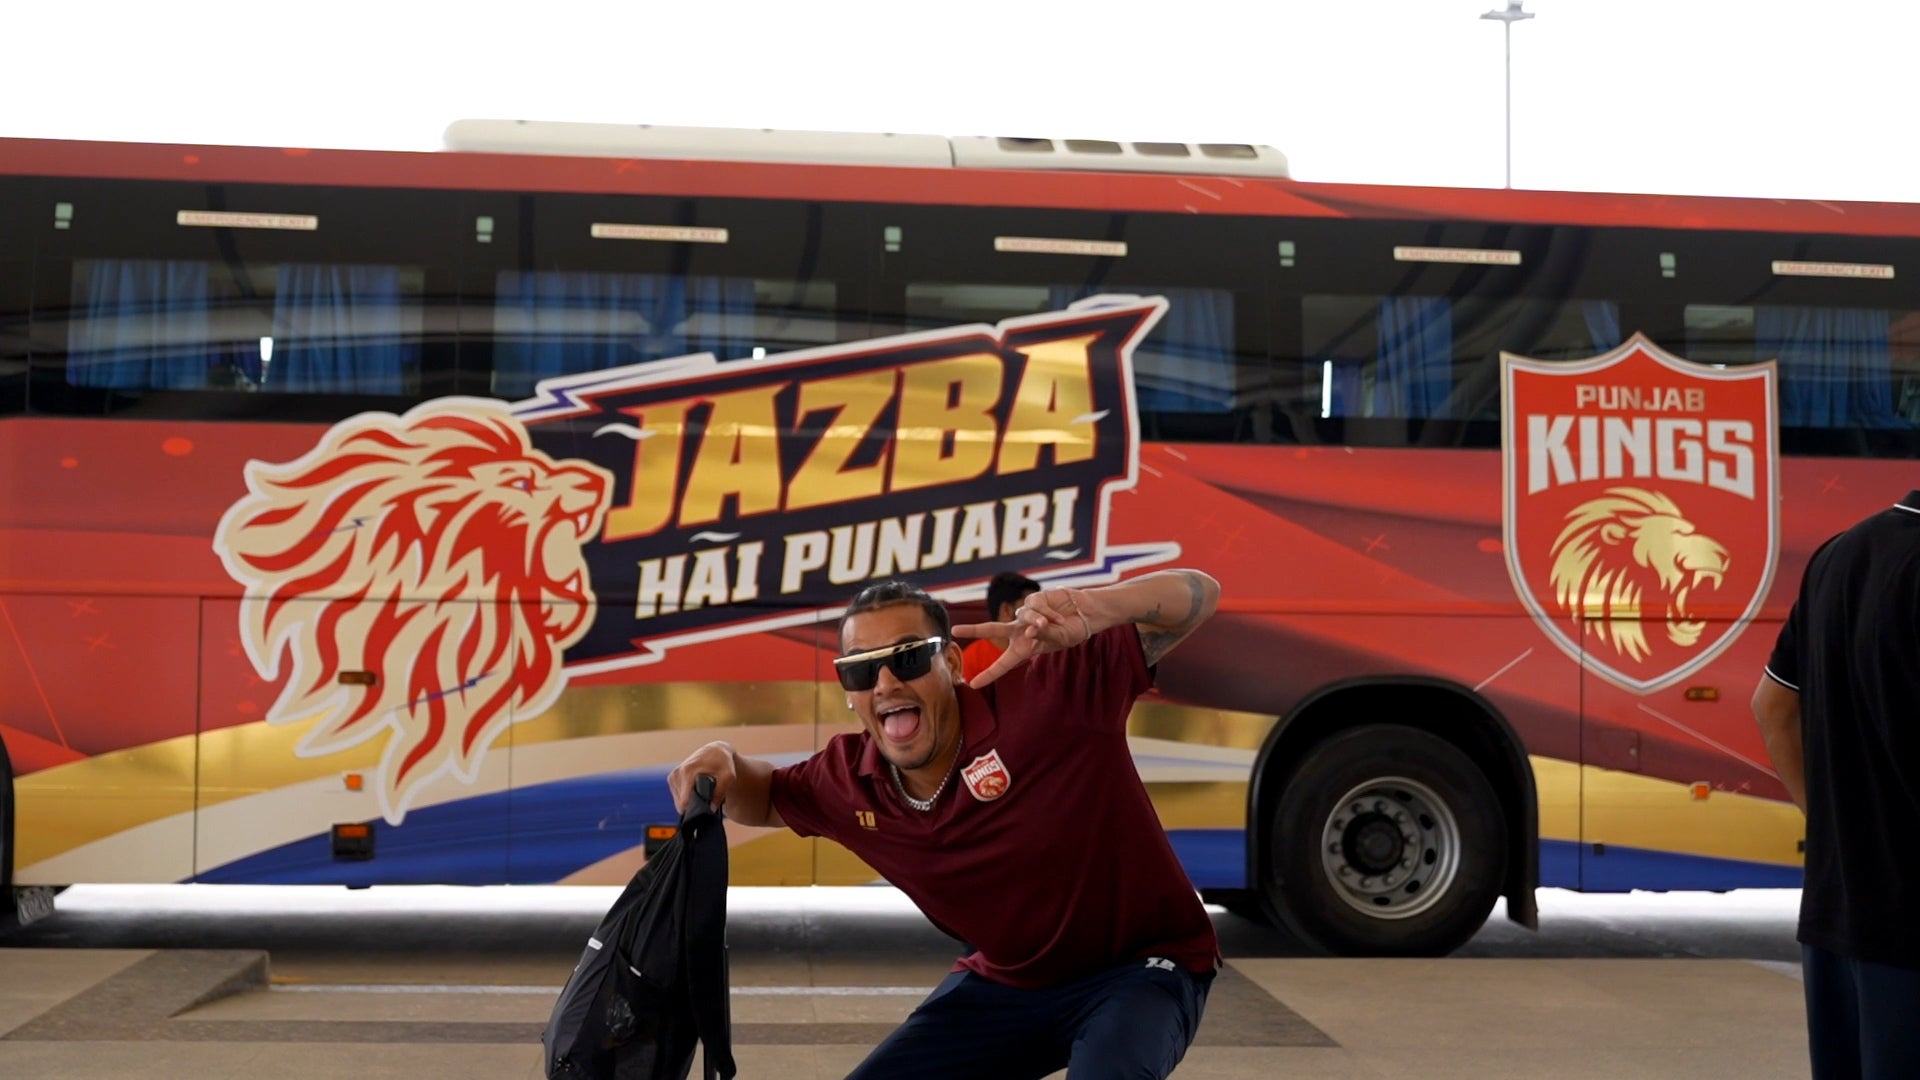 Team Punjab Kings is all swag on JioTV